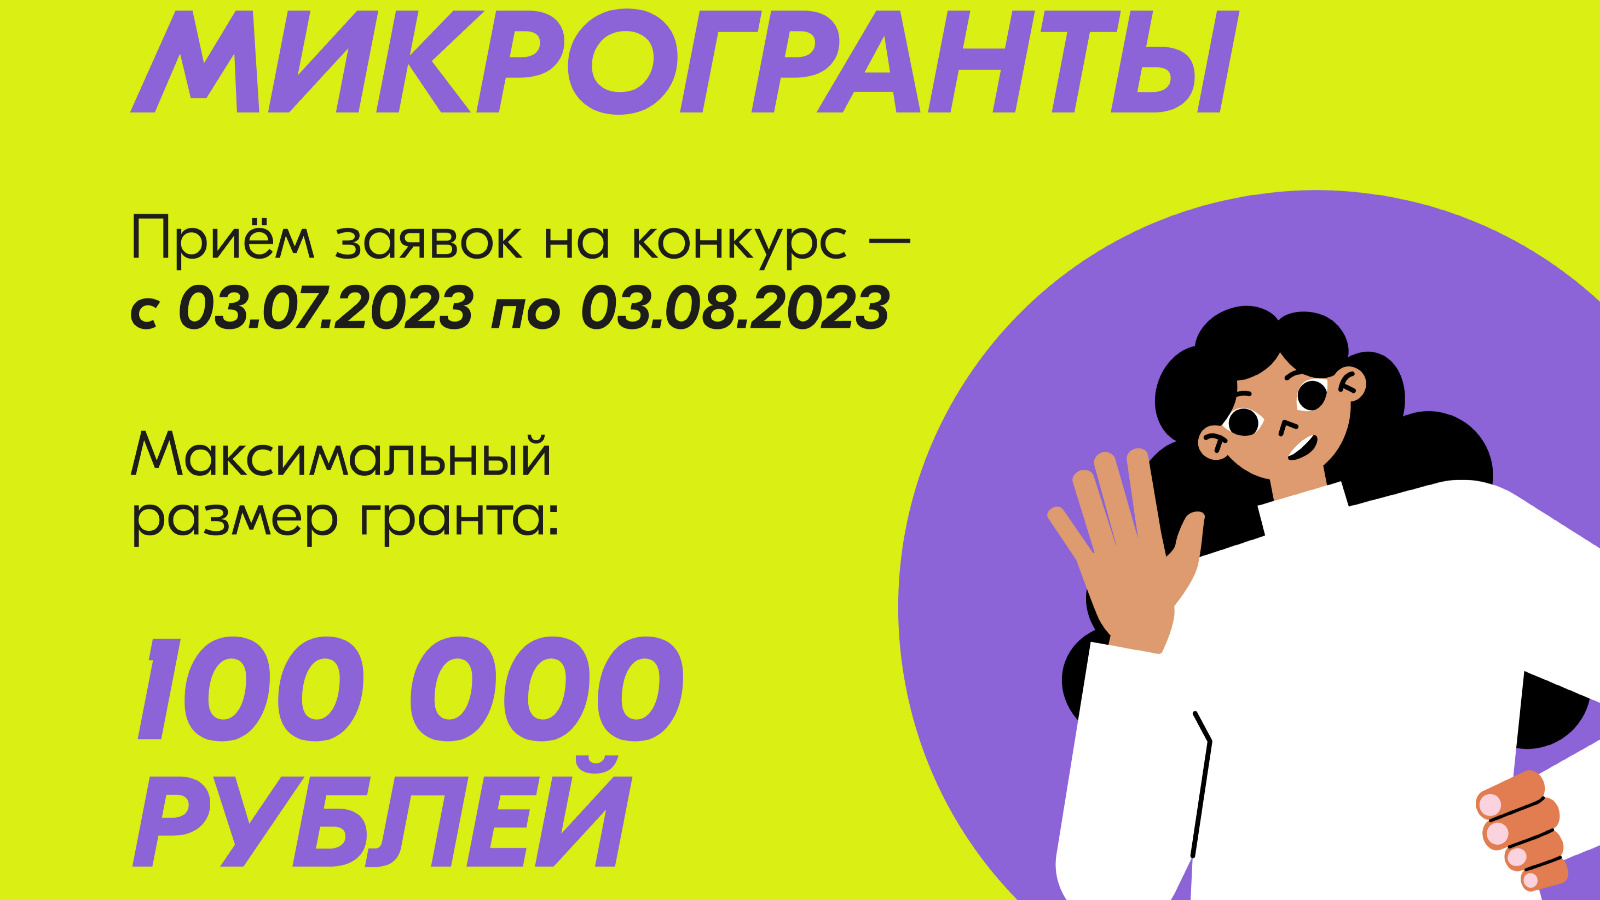 Молодые волжане могут получить до 100 тысяч рублей на реализацию своих идей